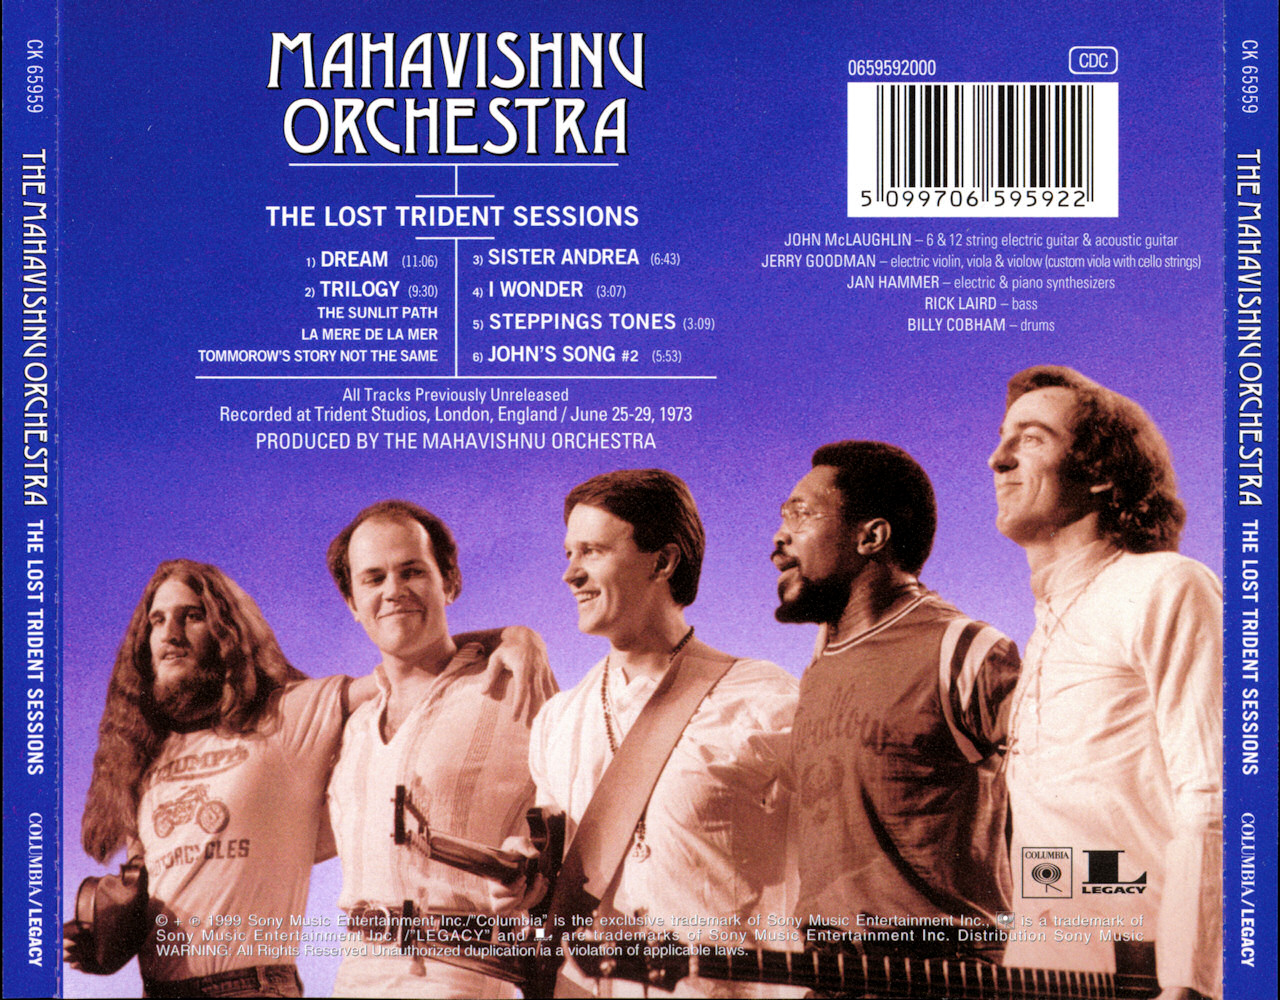 Mahavishnu orchestra. Группа Mahavishnu Orchestra. The Mahavishnu Orchestra 1973. Группа Mahavishnu Orchestra альбомы. Картинки групп the Mahavishnu Orchestra.